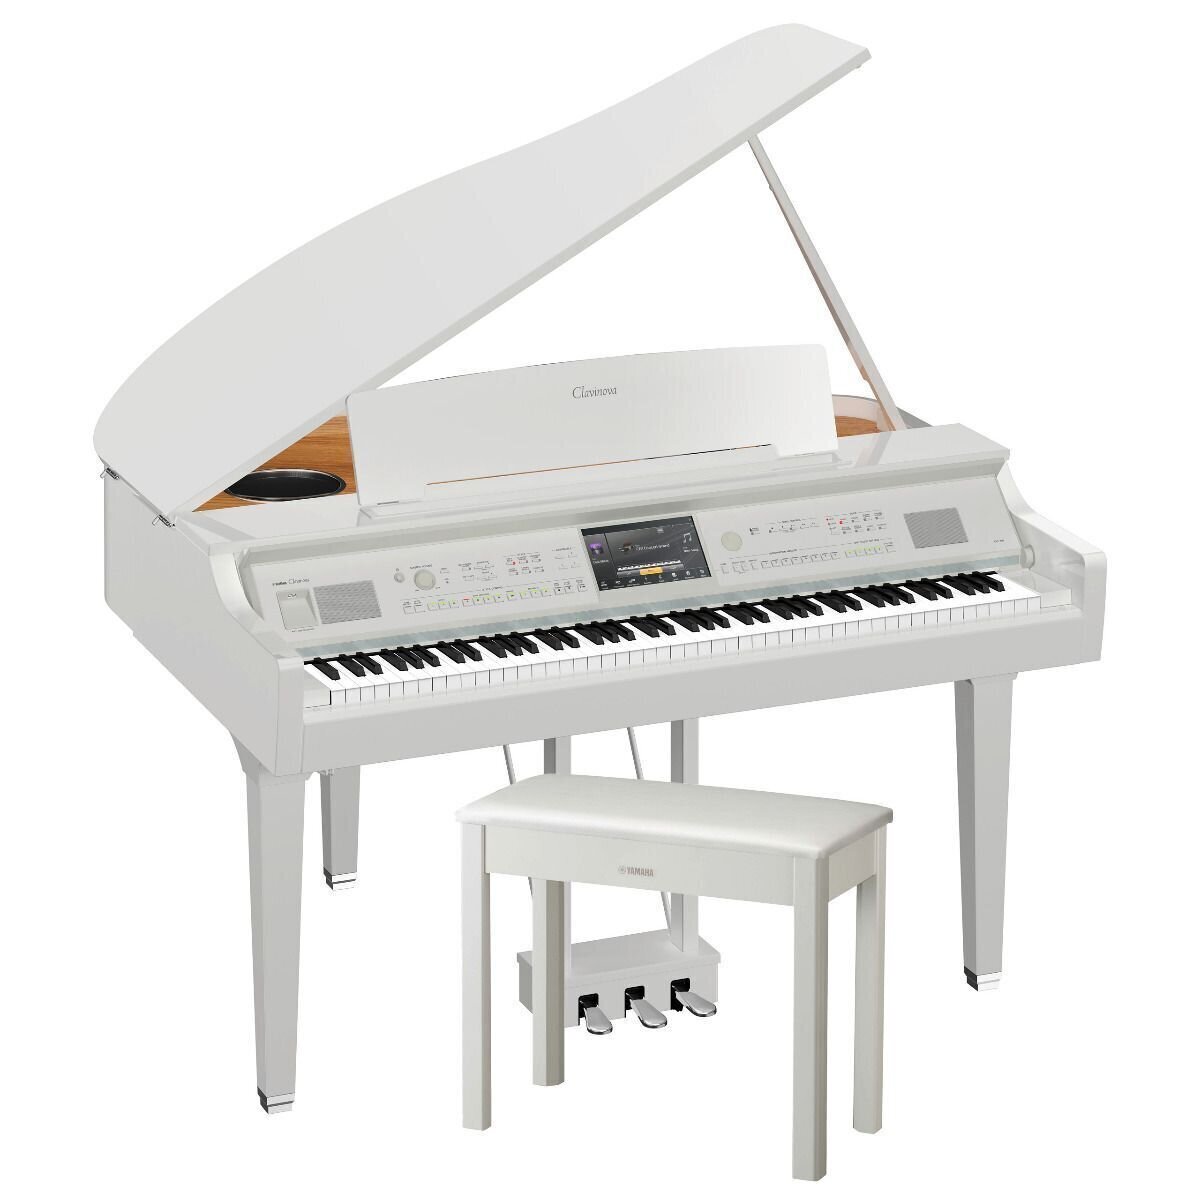 Ψηφιακό Πιάνο Yamaha CVP 809GP Polished White Ψηφιακό Πιάνο